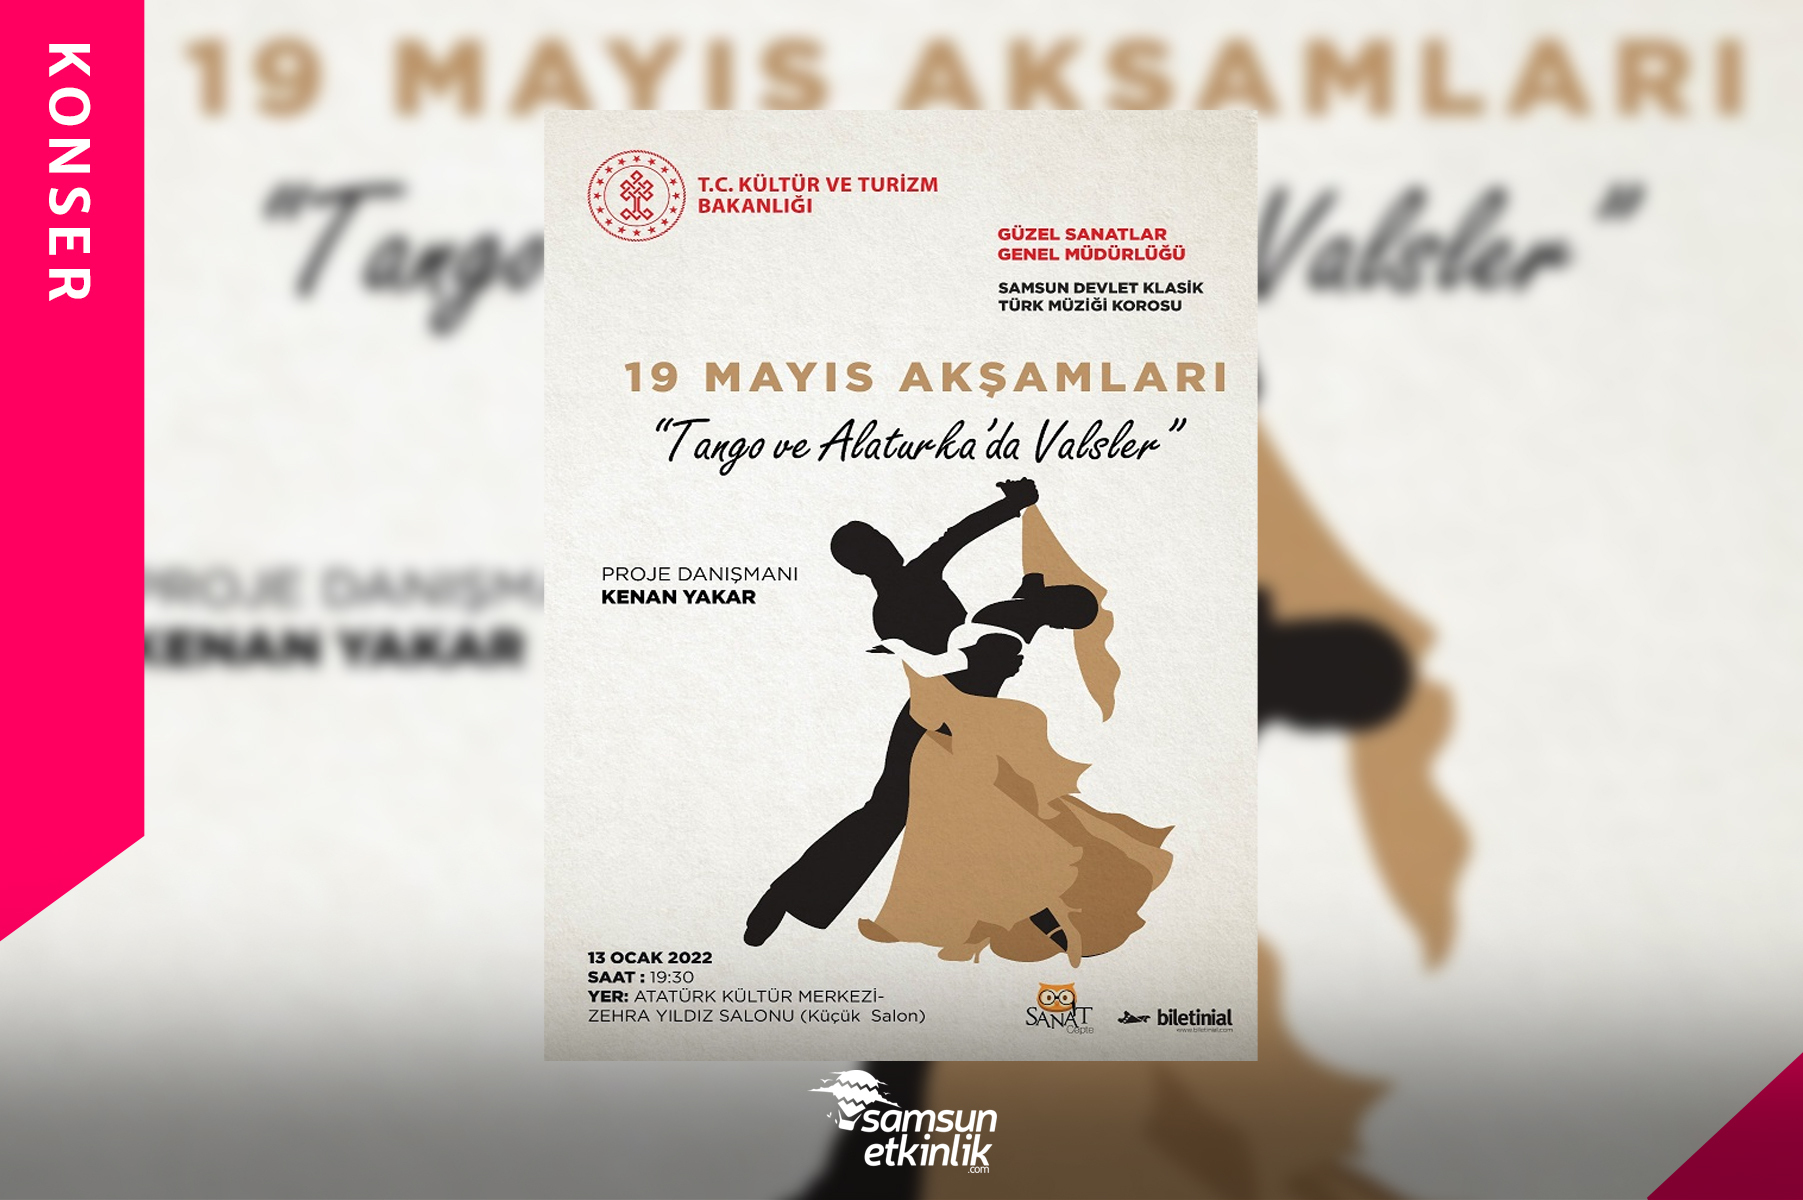 19 Mayıs Akşamları Tango ve Alaturka'da Valsler